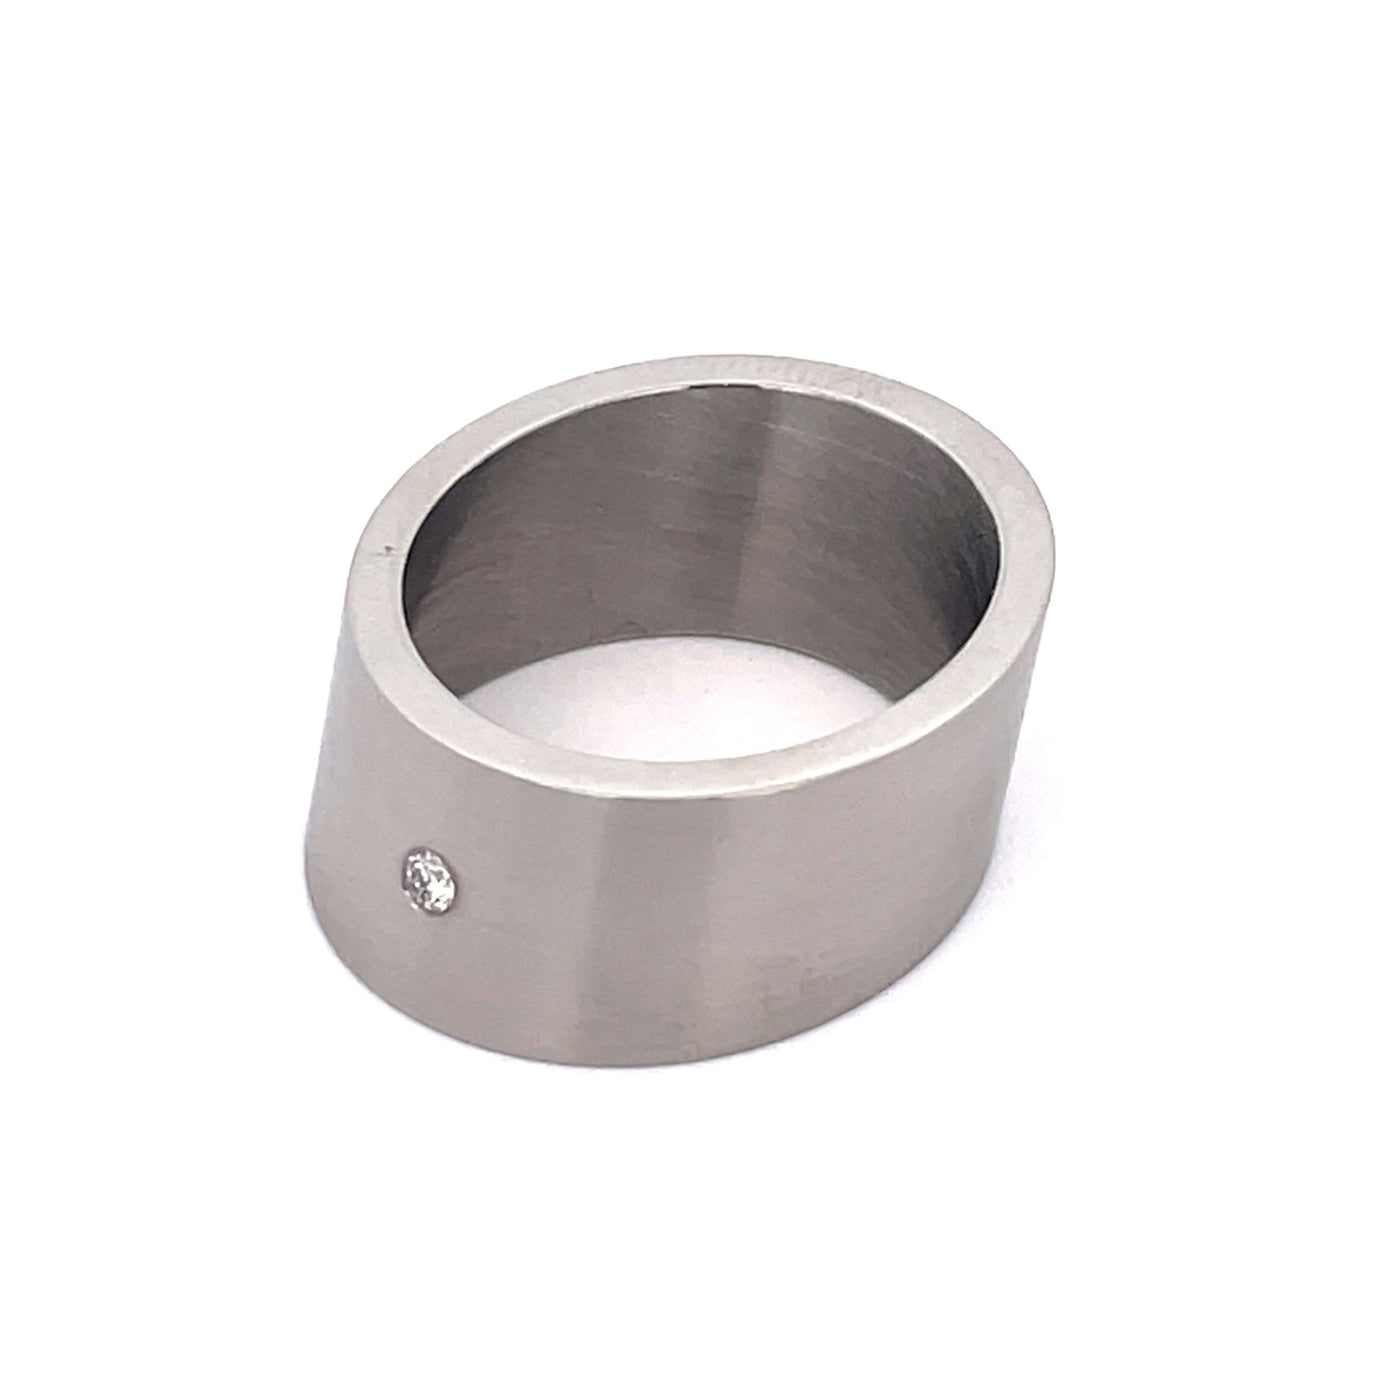 9mm Stainless Steel Flush Set Single Diamond Angled Ring